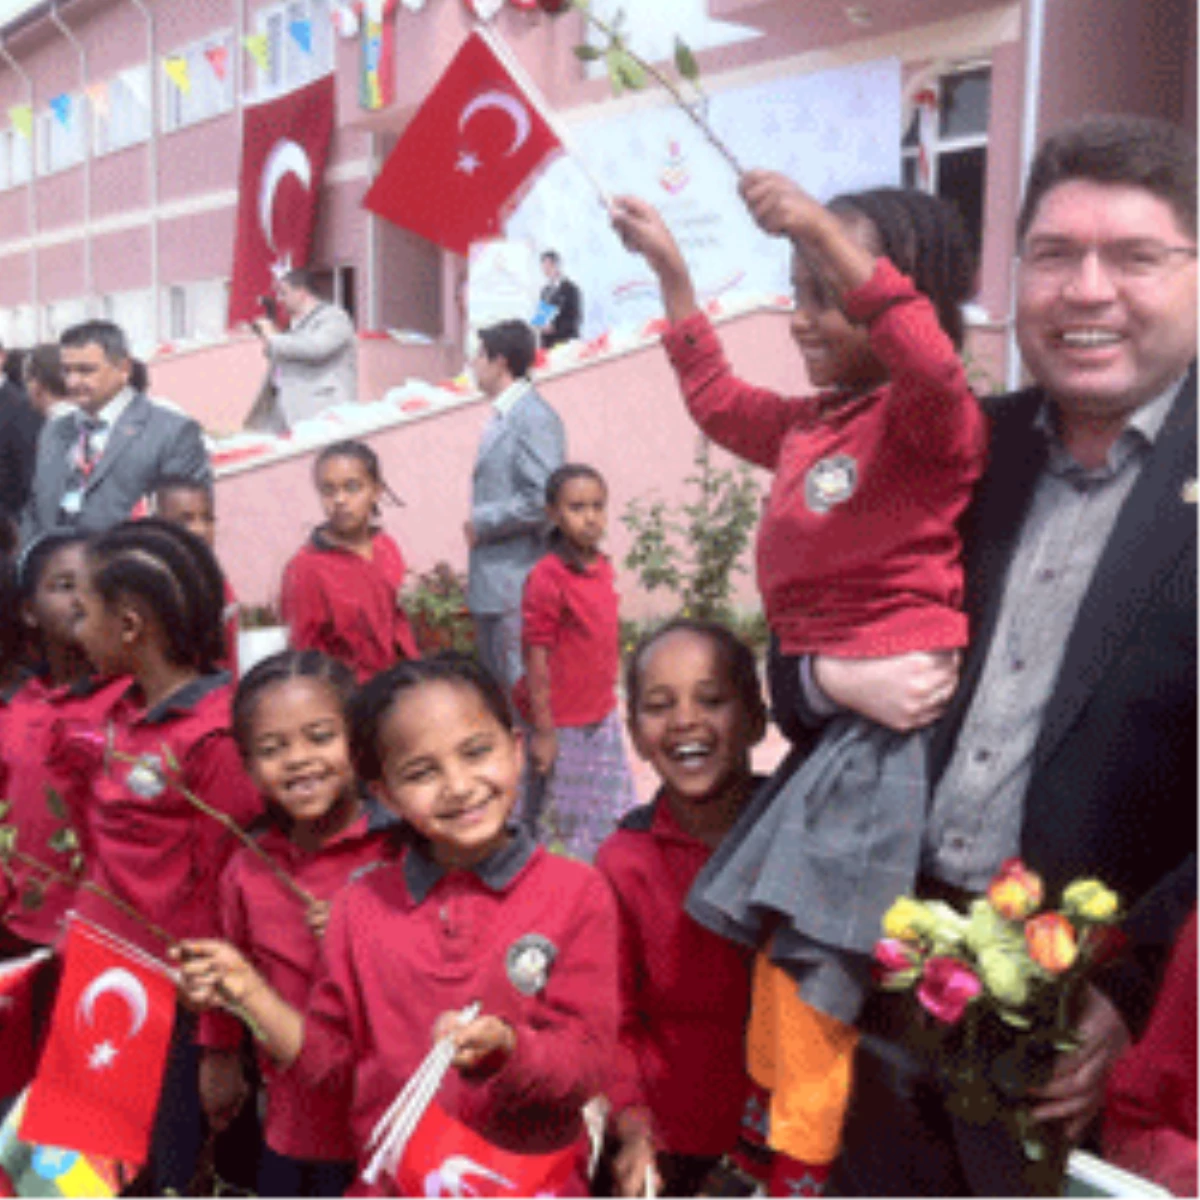 "Dünya’ya Eğitim ve Yatırım İhraç Eden Türkiye ile Gurur Duyuyoruz"
